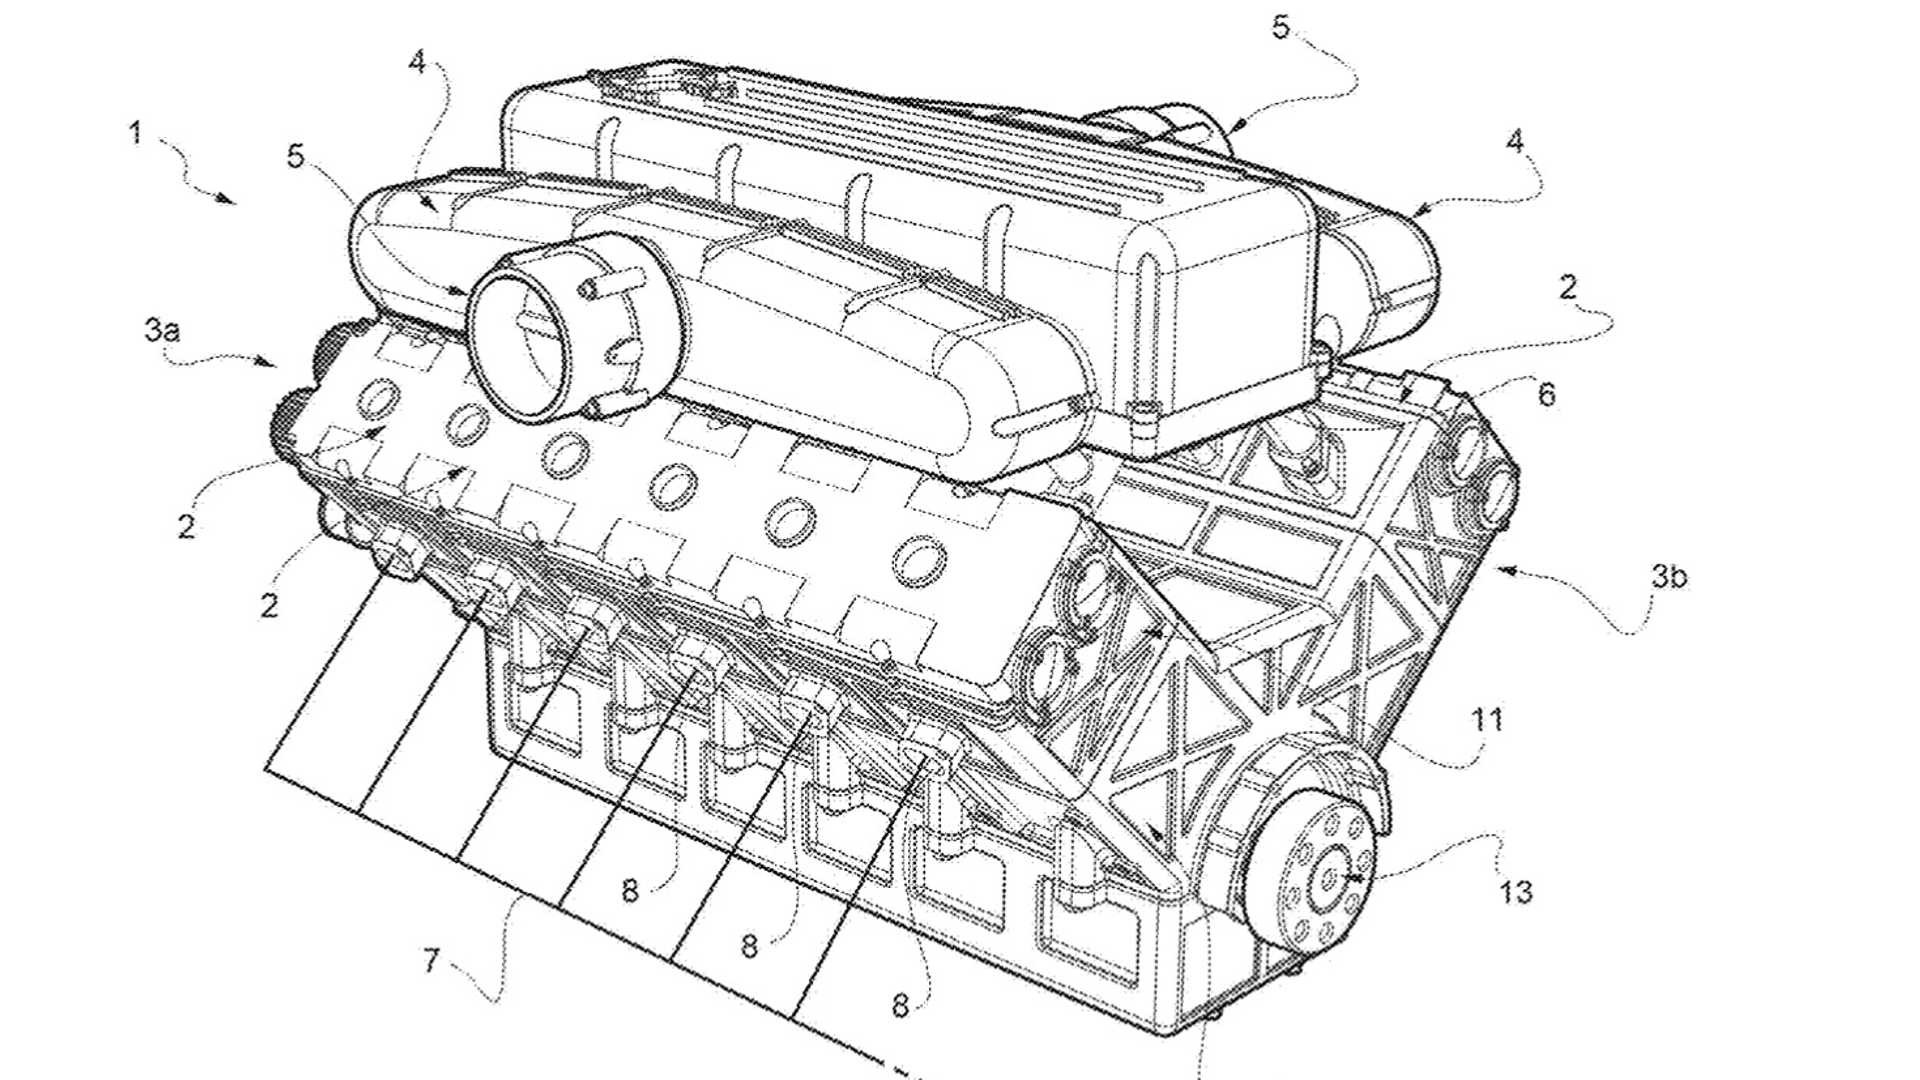 法拉利全新专利v12发动机,效率更高